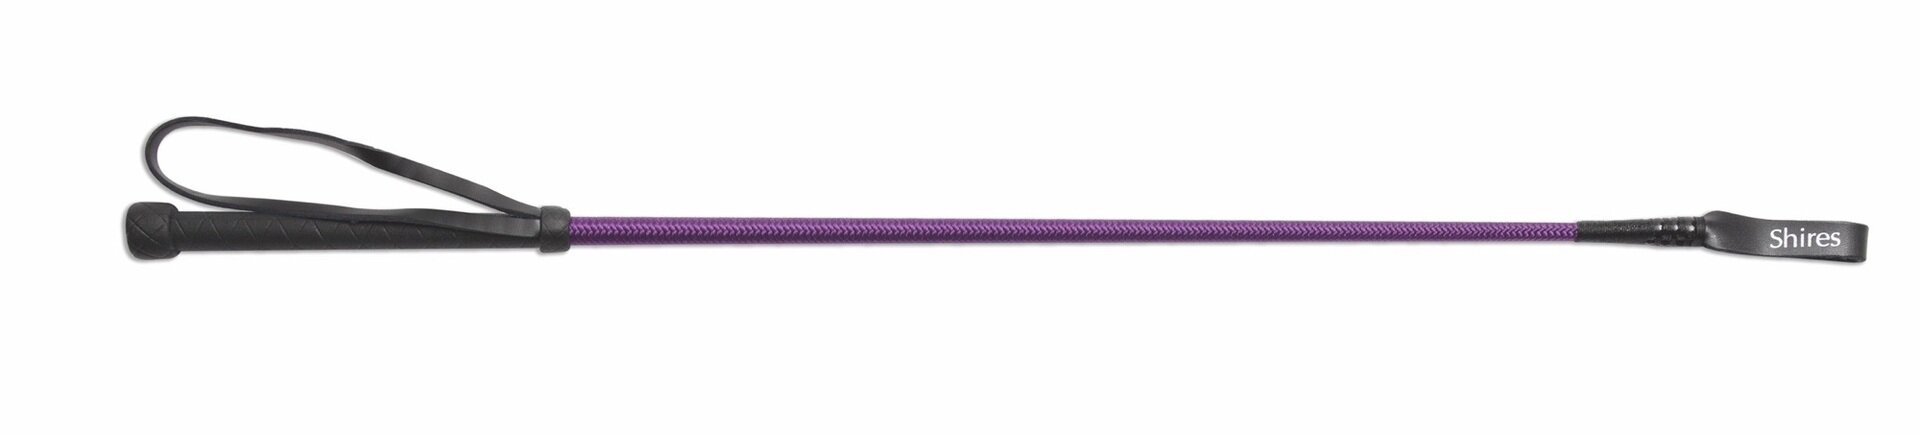 Хлыст для верховой езды SHIRES "Stem", 60 см, фиолетовый (Великобритания)